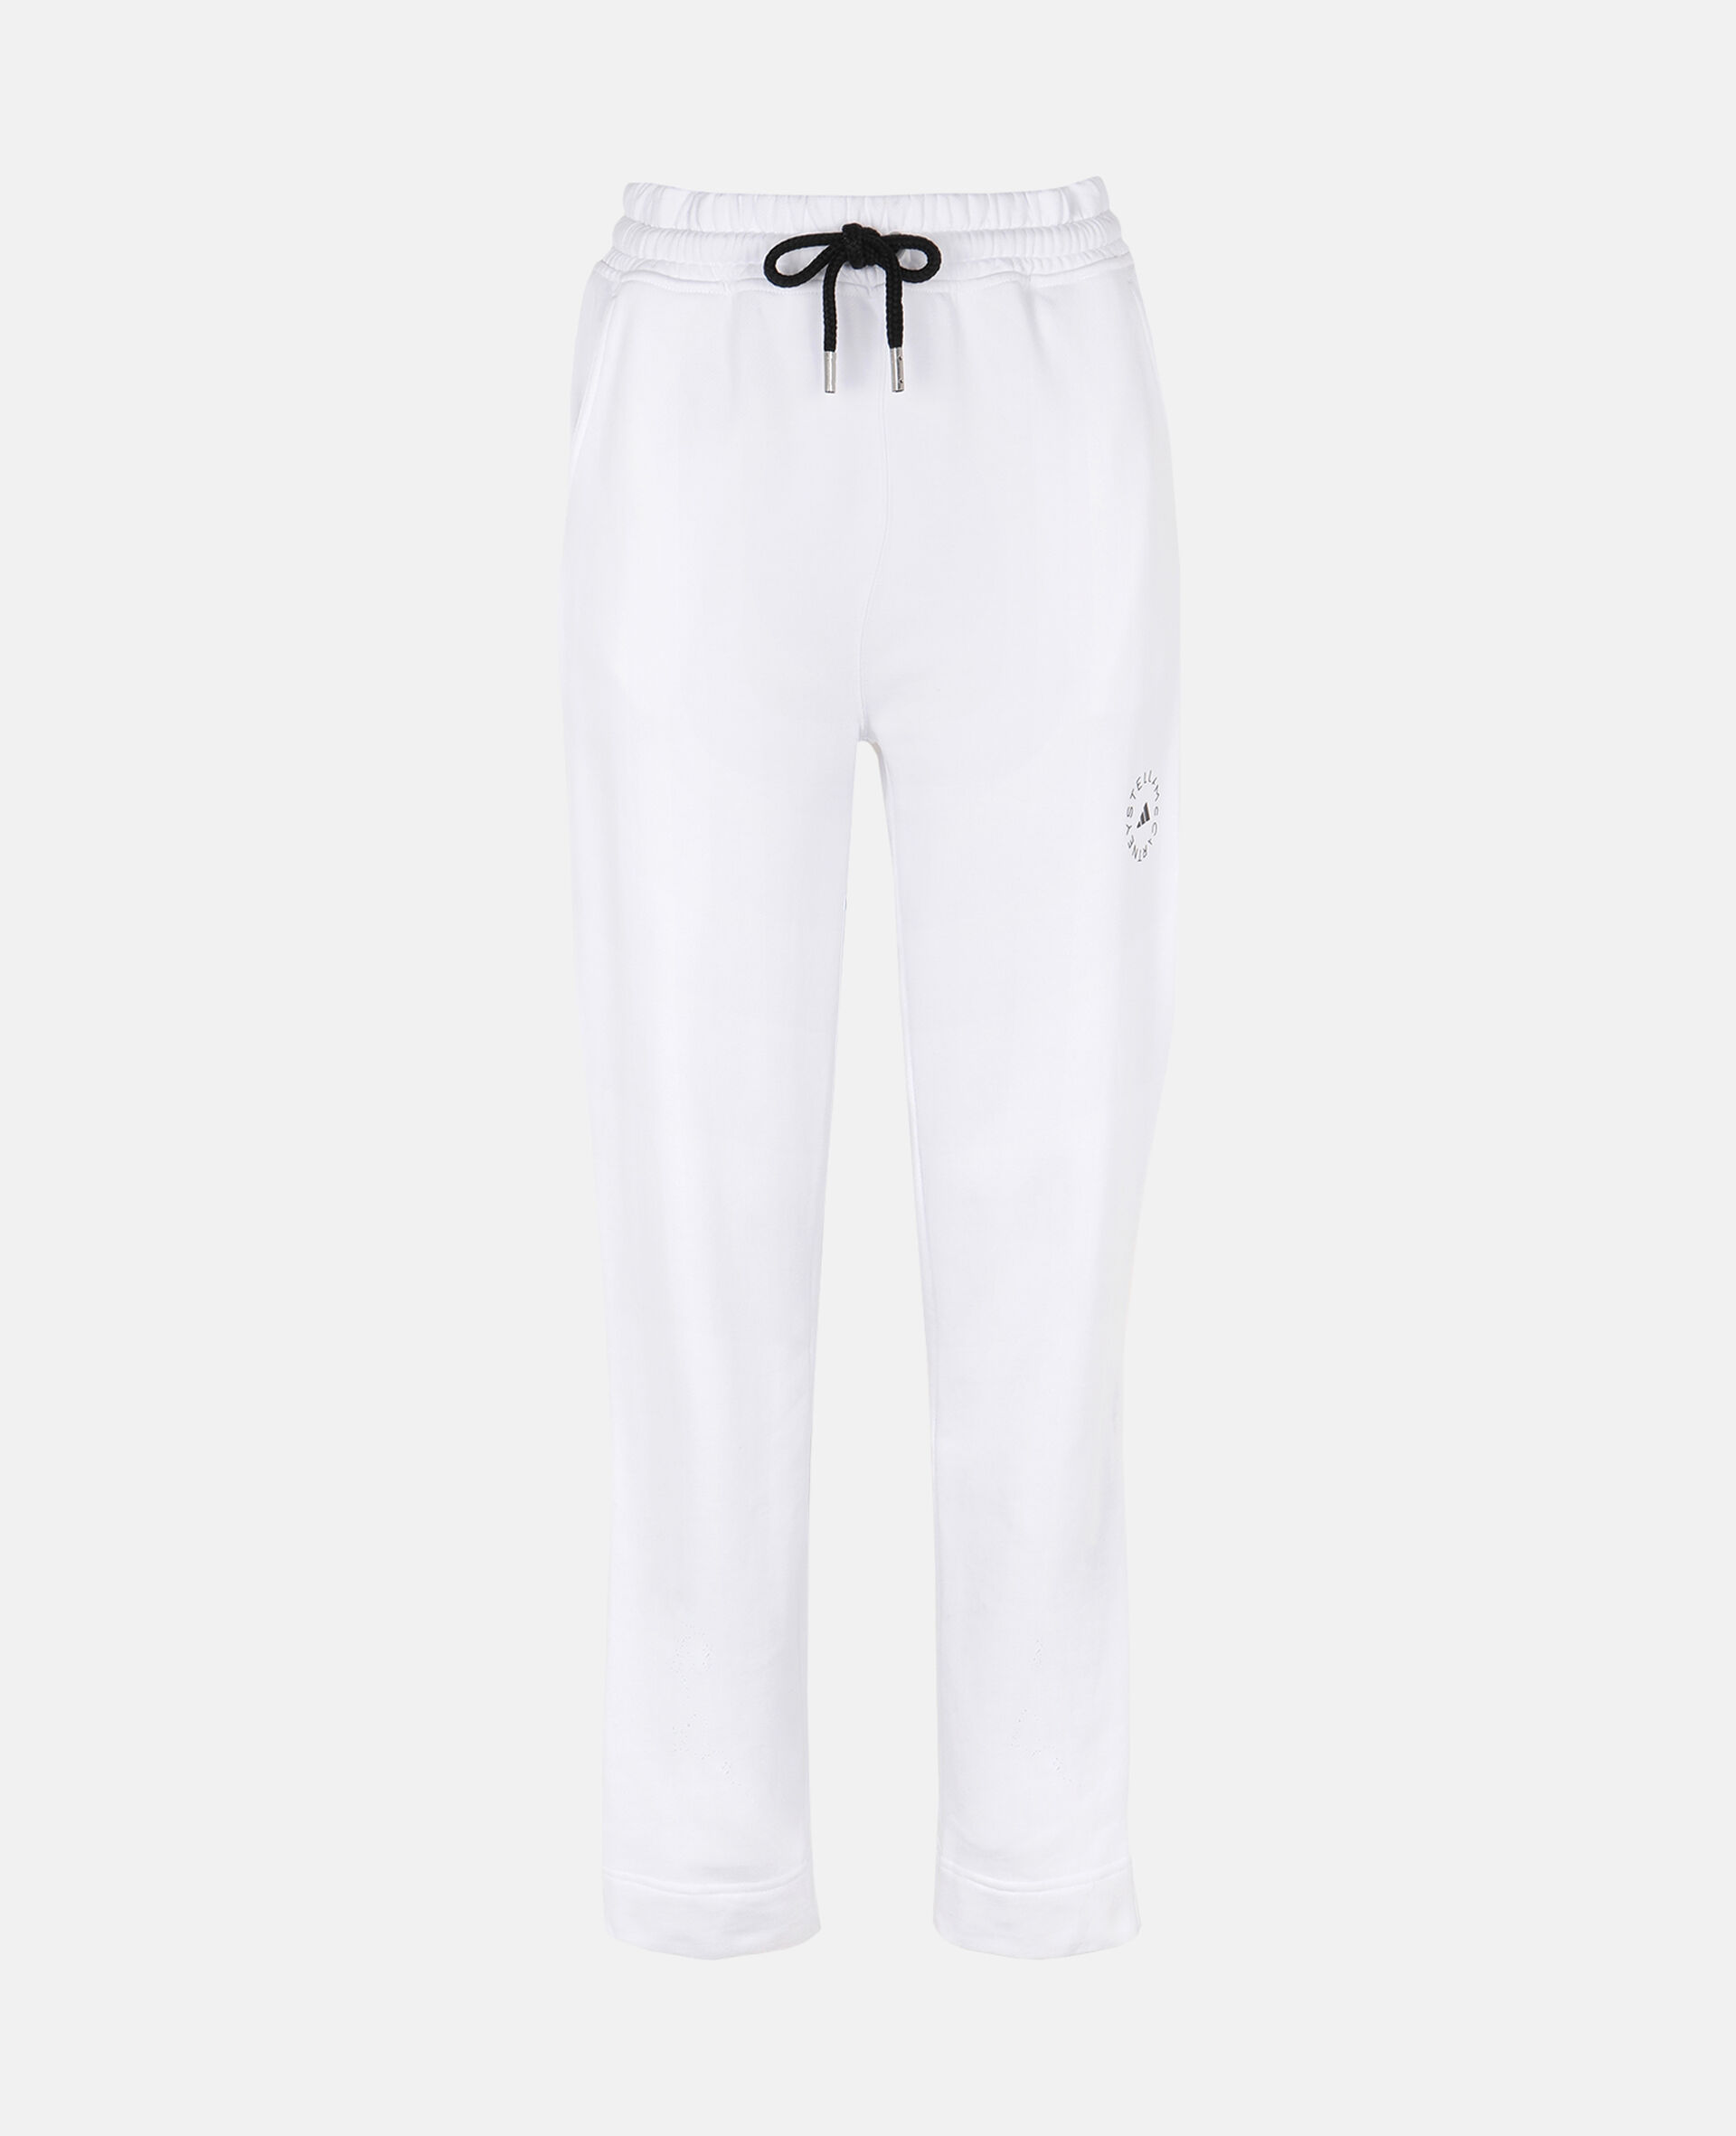 White Training Sweatpants -White-large image number 0